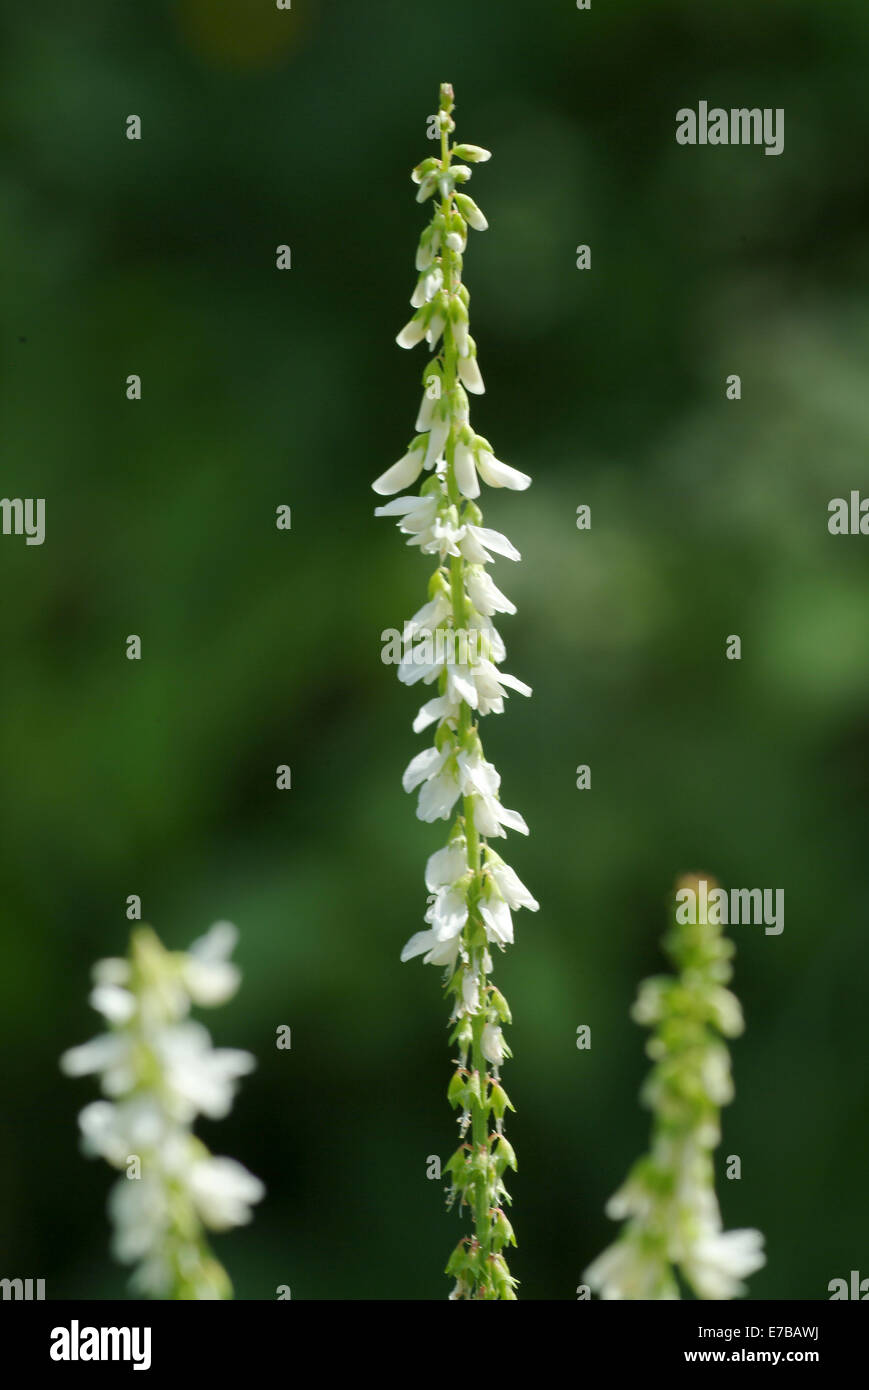 white sweet clover, melilotus albus Stock Photo